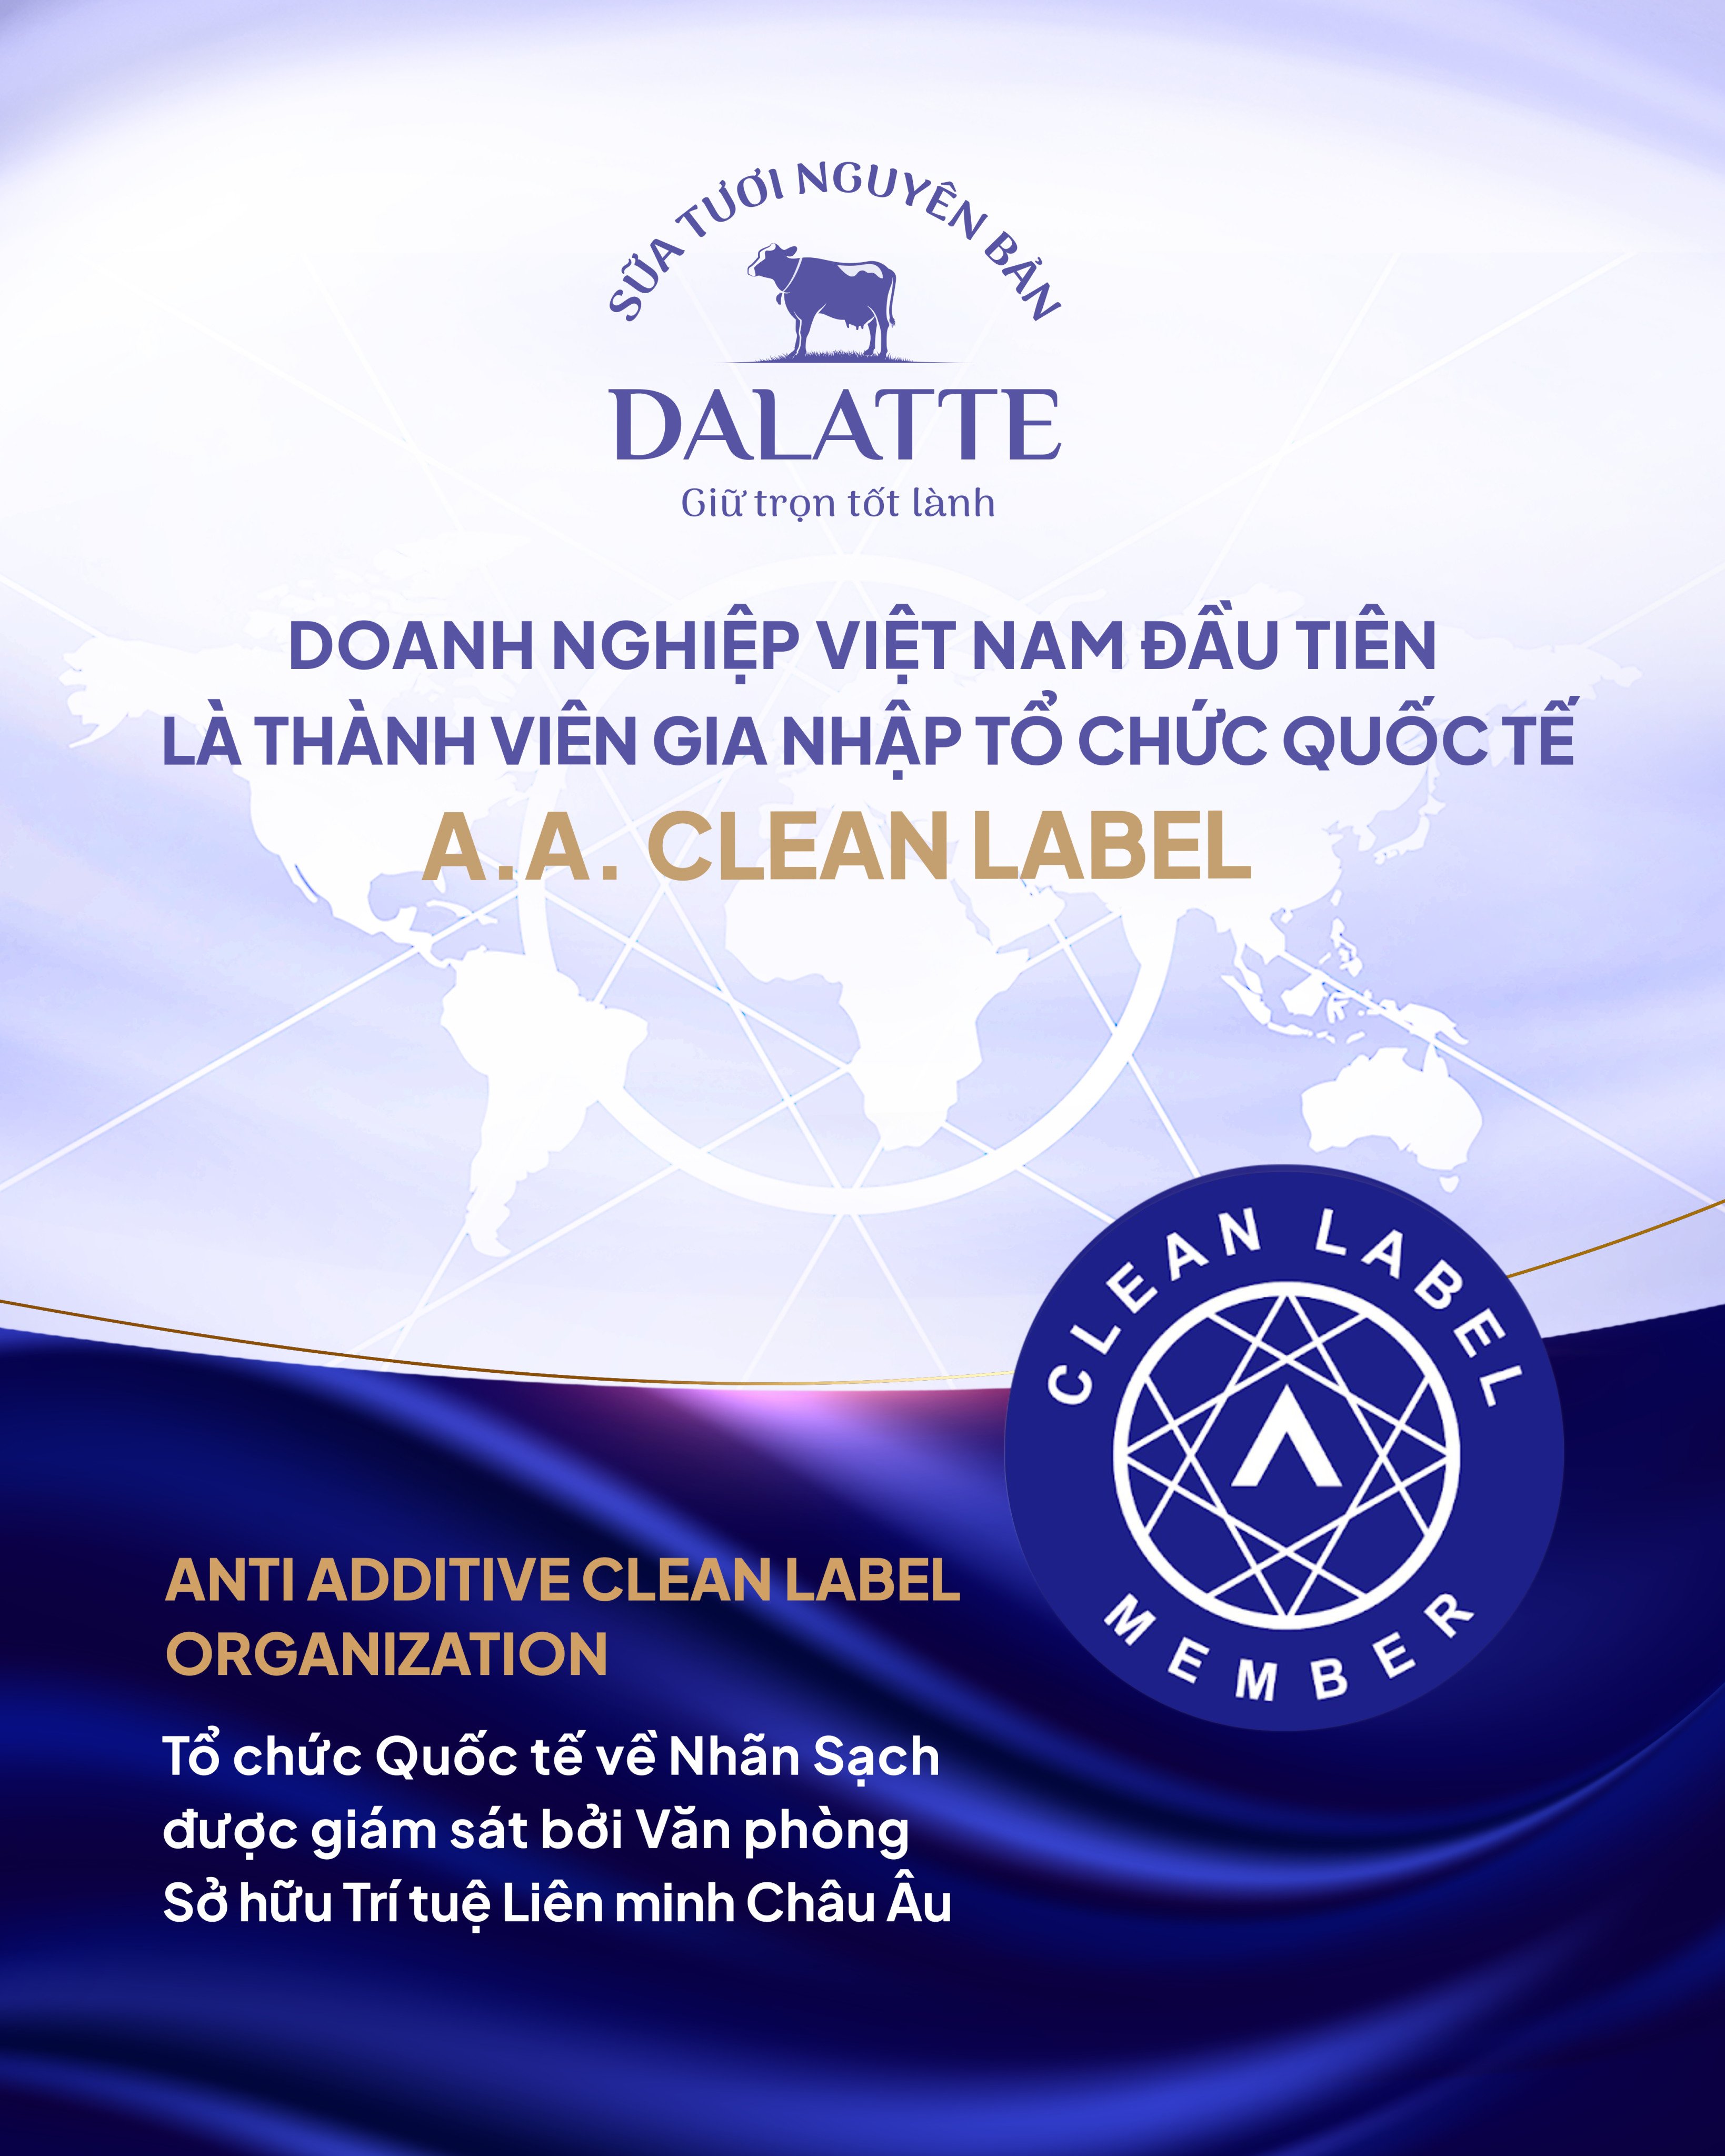 DALATTE - Doanh nghiệp Việt Nam tiên phong là thành viên của Tổ chức A.A. Clean Label - 1